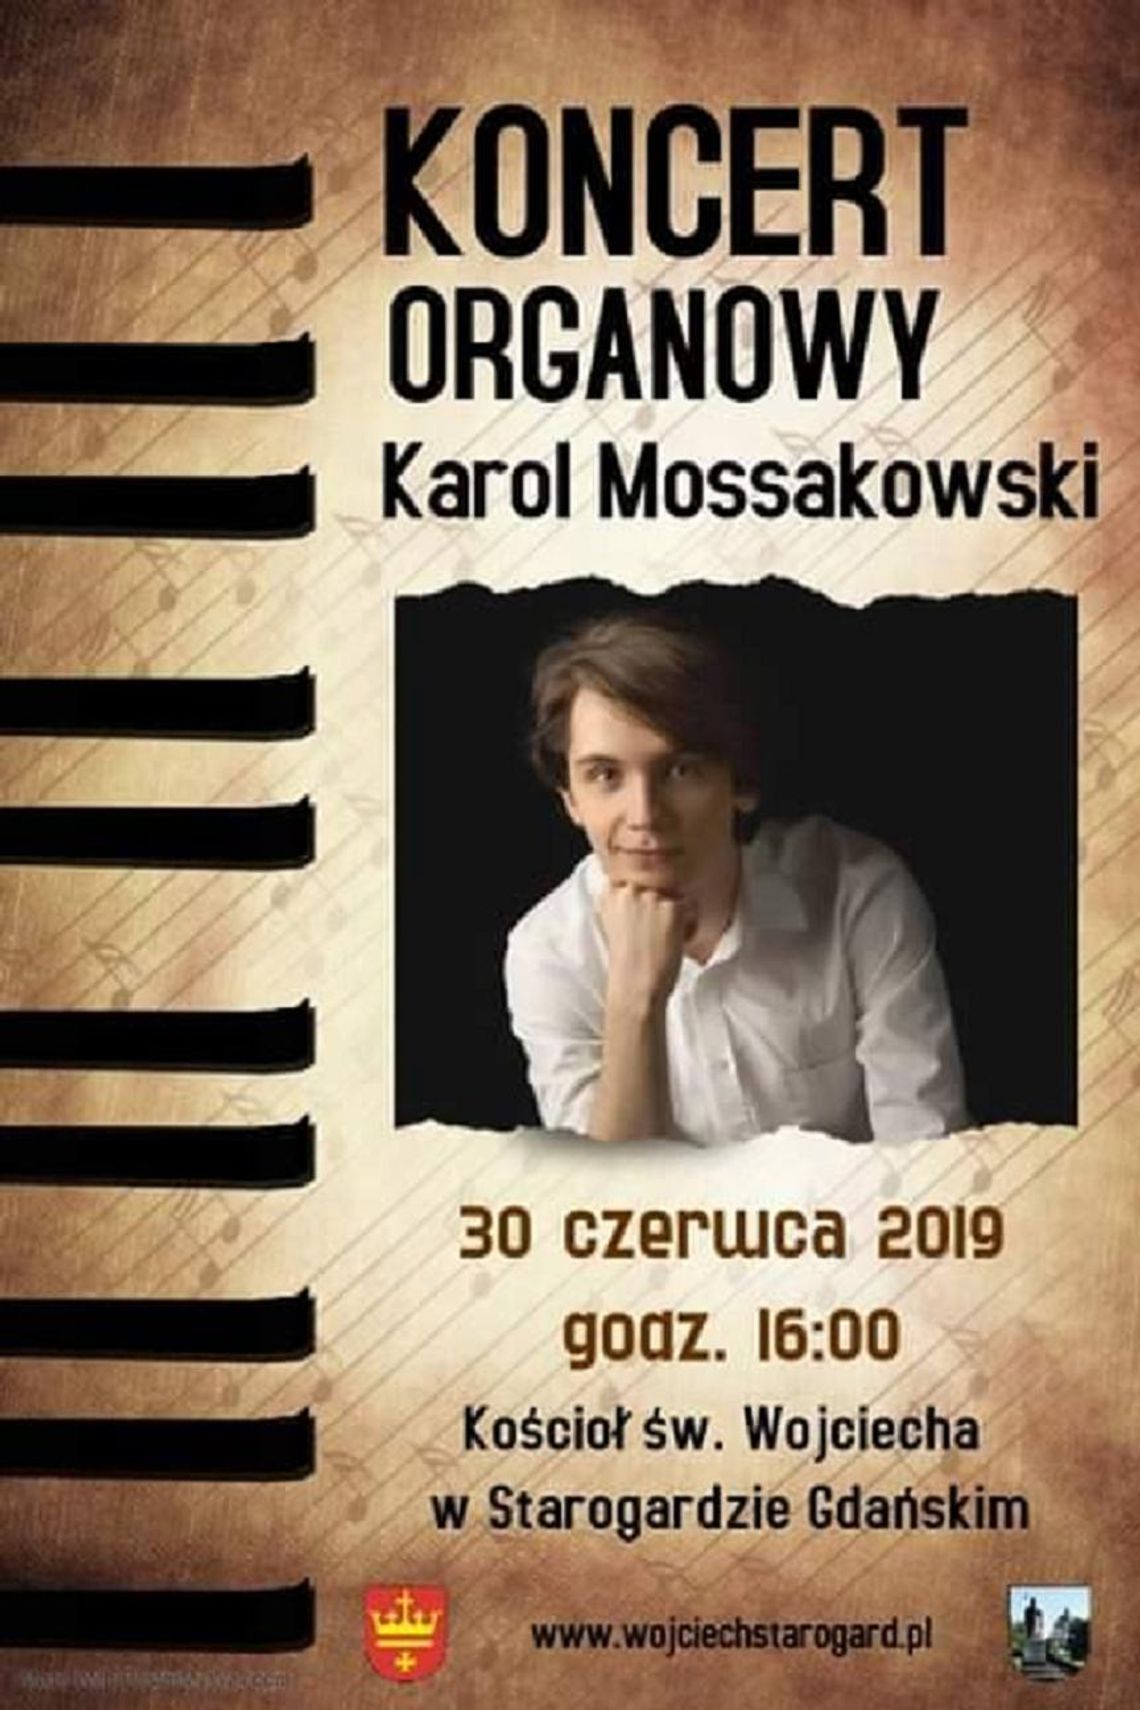 Koncert organowy Karola Mossakowskiego